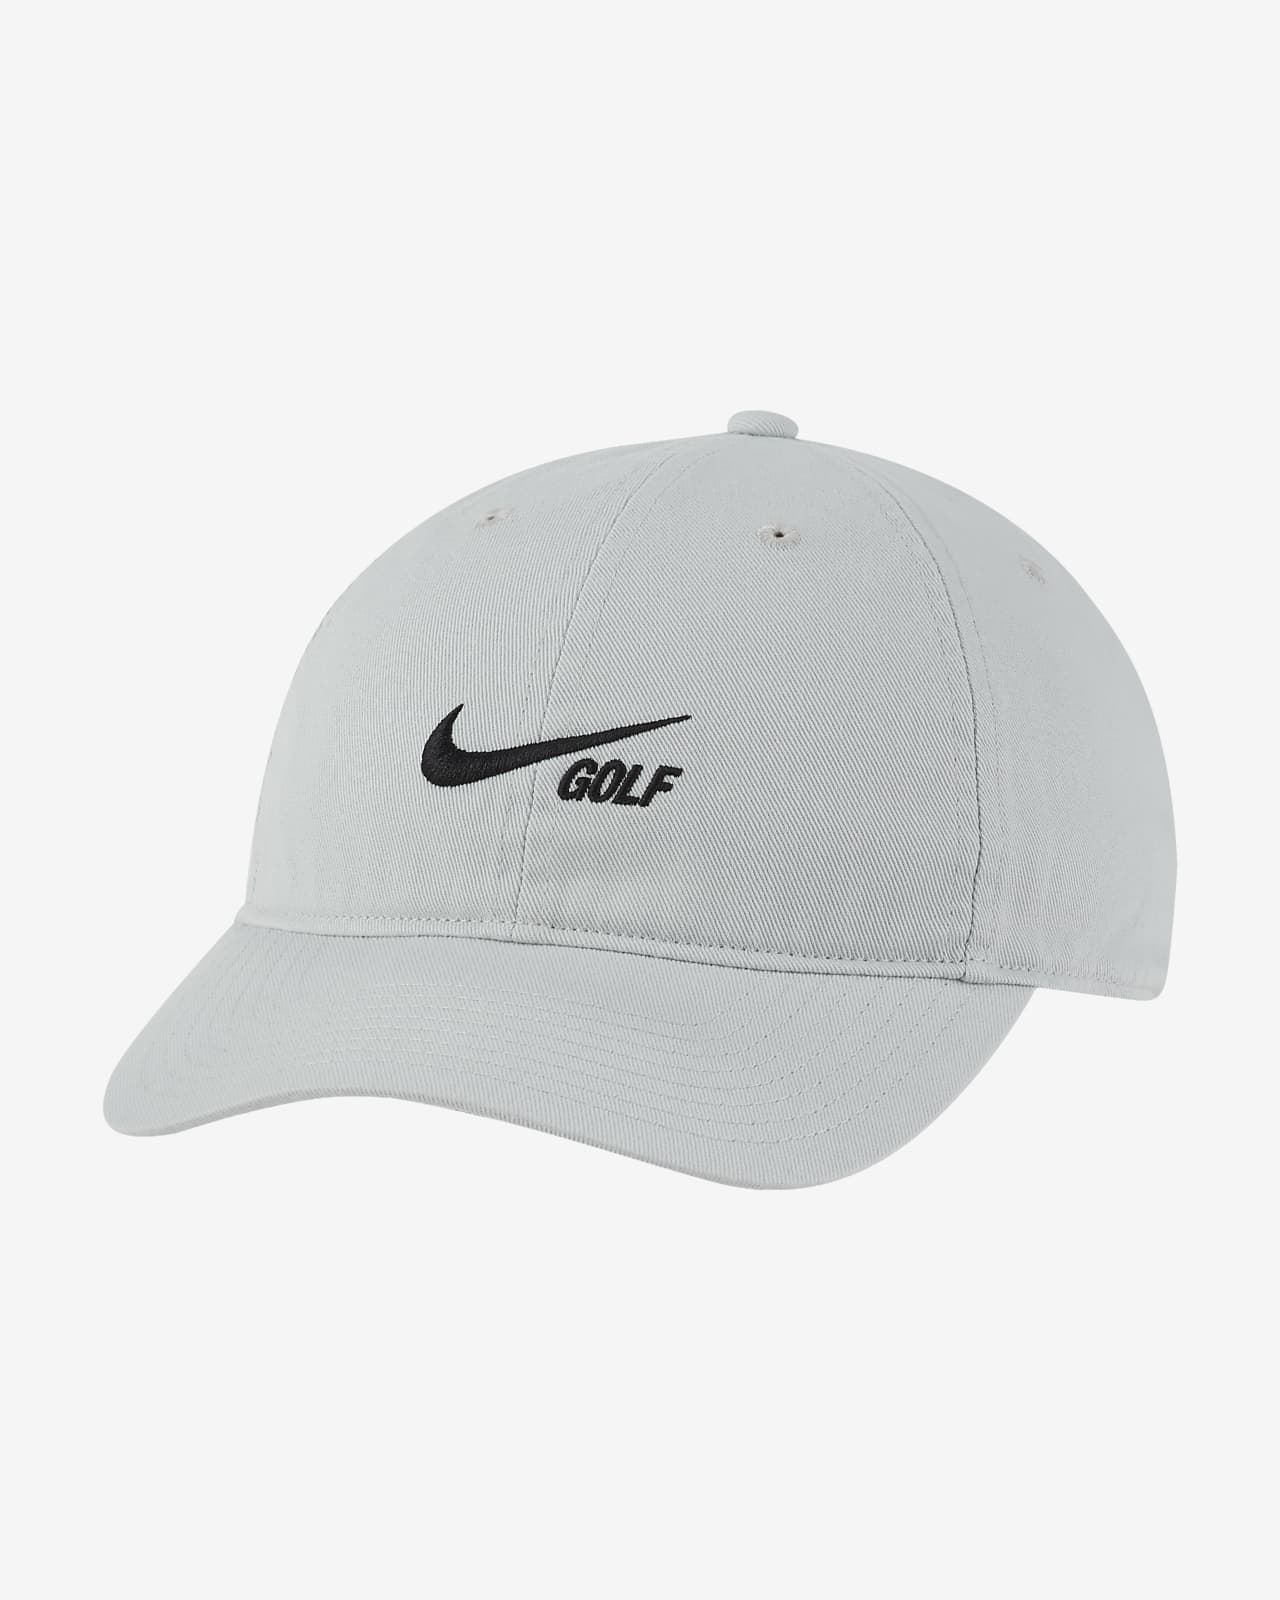 Raad veiligheid Uitpakken Nike Heritage86 Washed Golf Hat. Nike JP